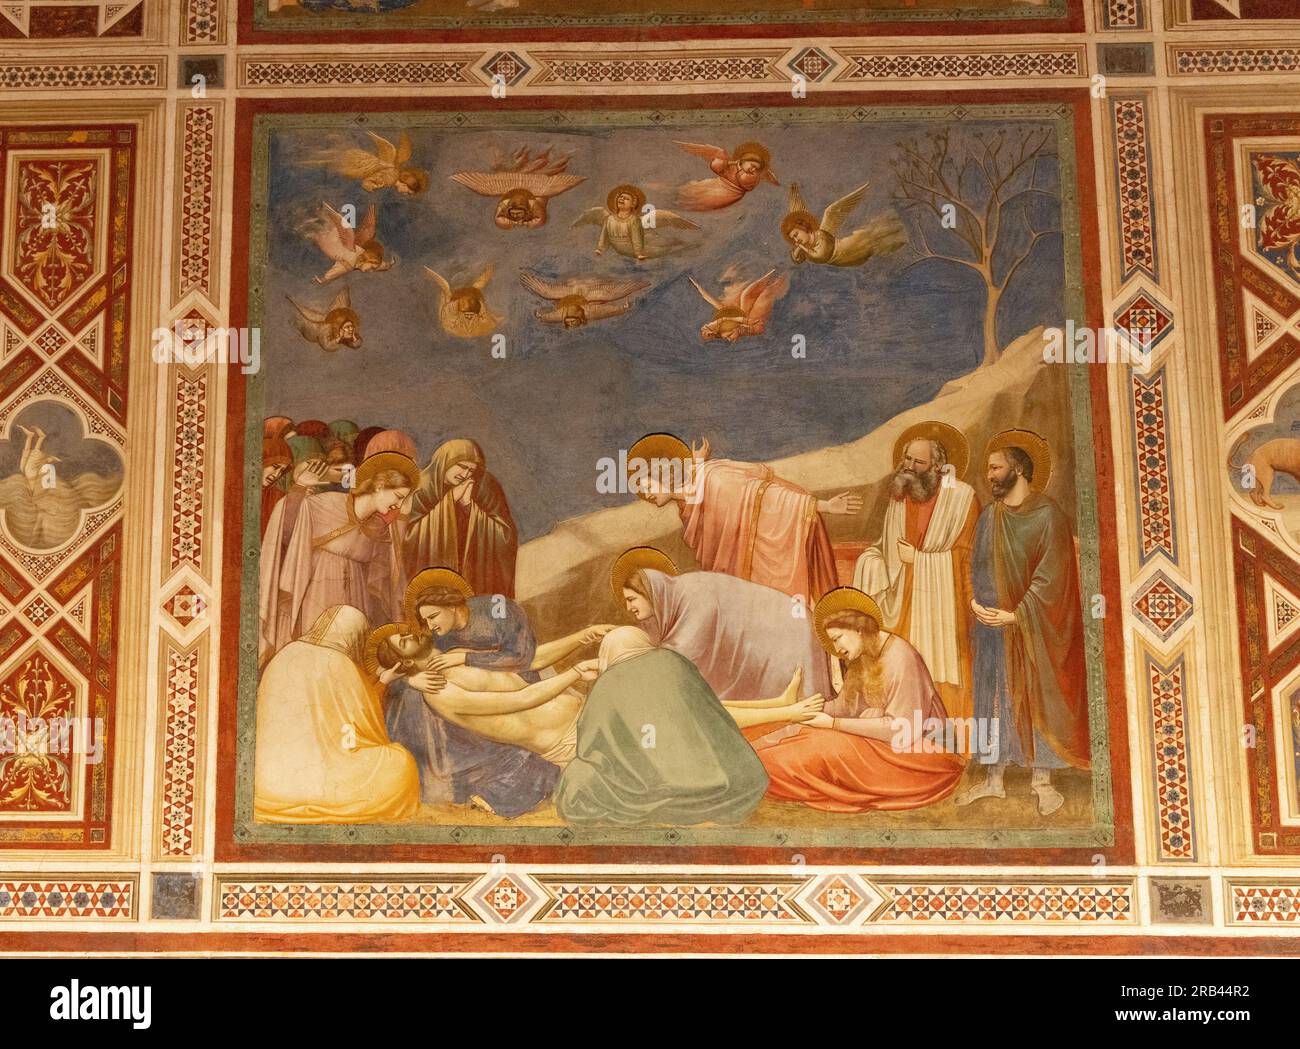 Fresques de Giotto di Bondone, la chapelle Scrovegni, Padoue Italie - peintures du 14e siècle de la vie du Christ ; - ici, 'Lamentation' ; art médiéval Banque D'Images